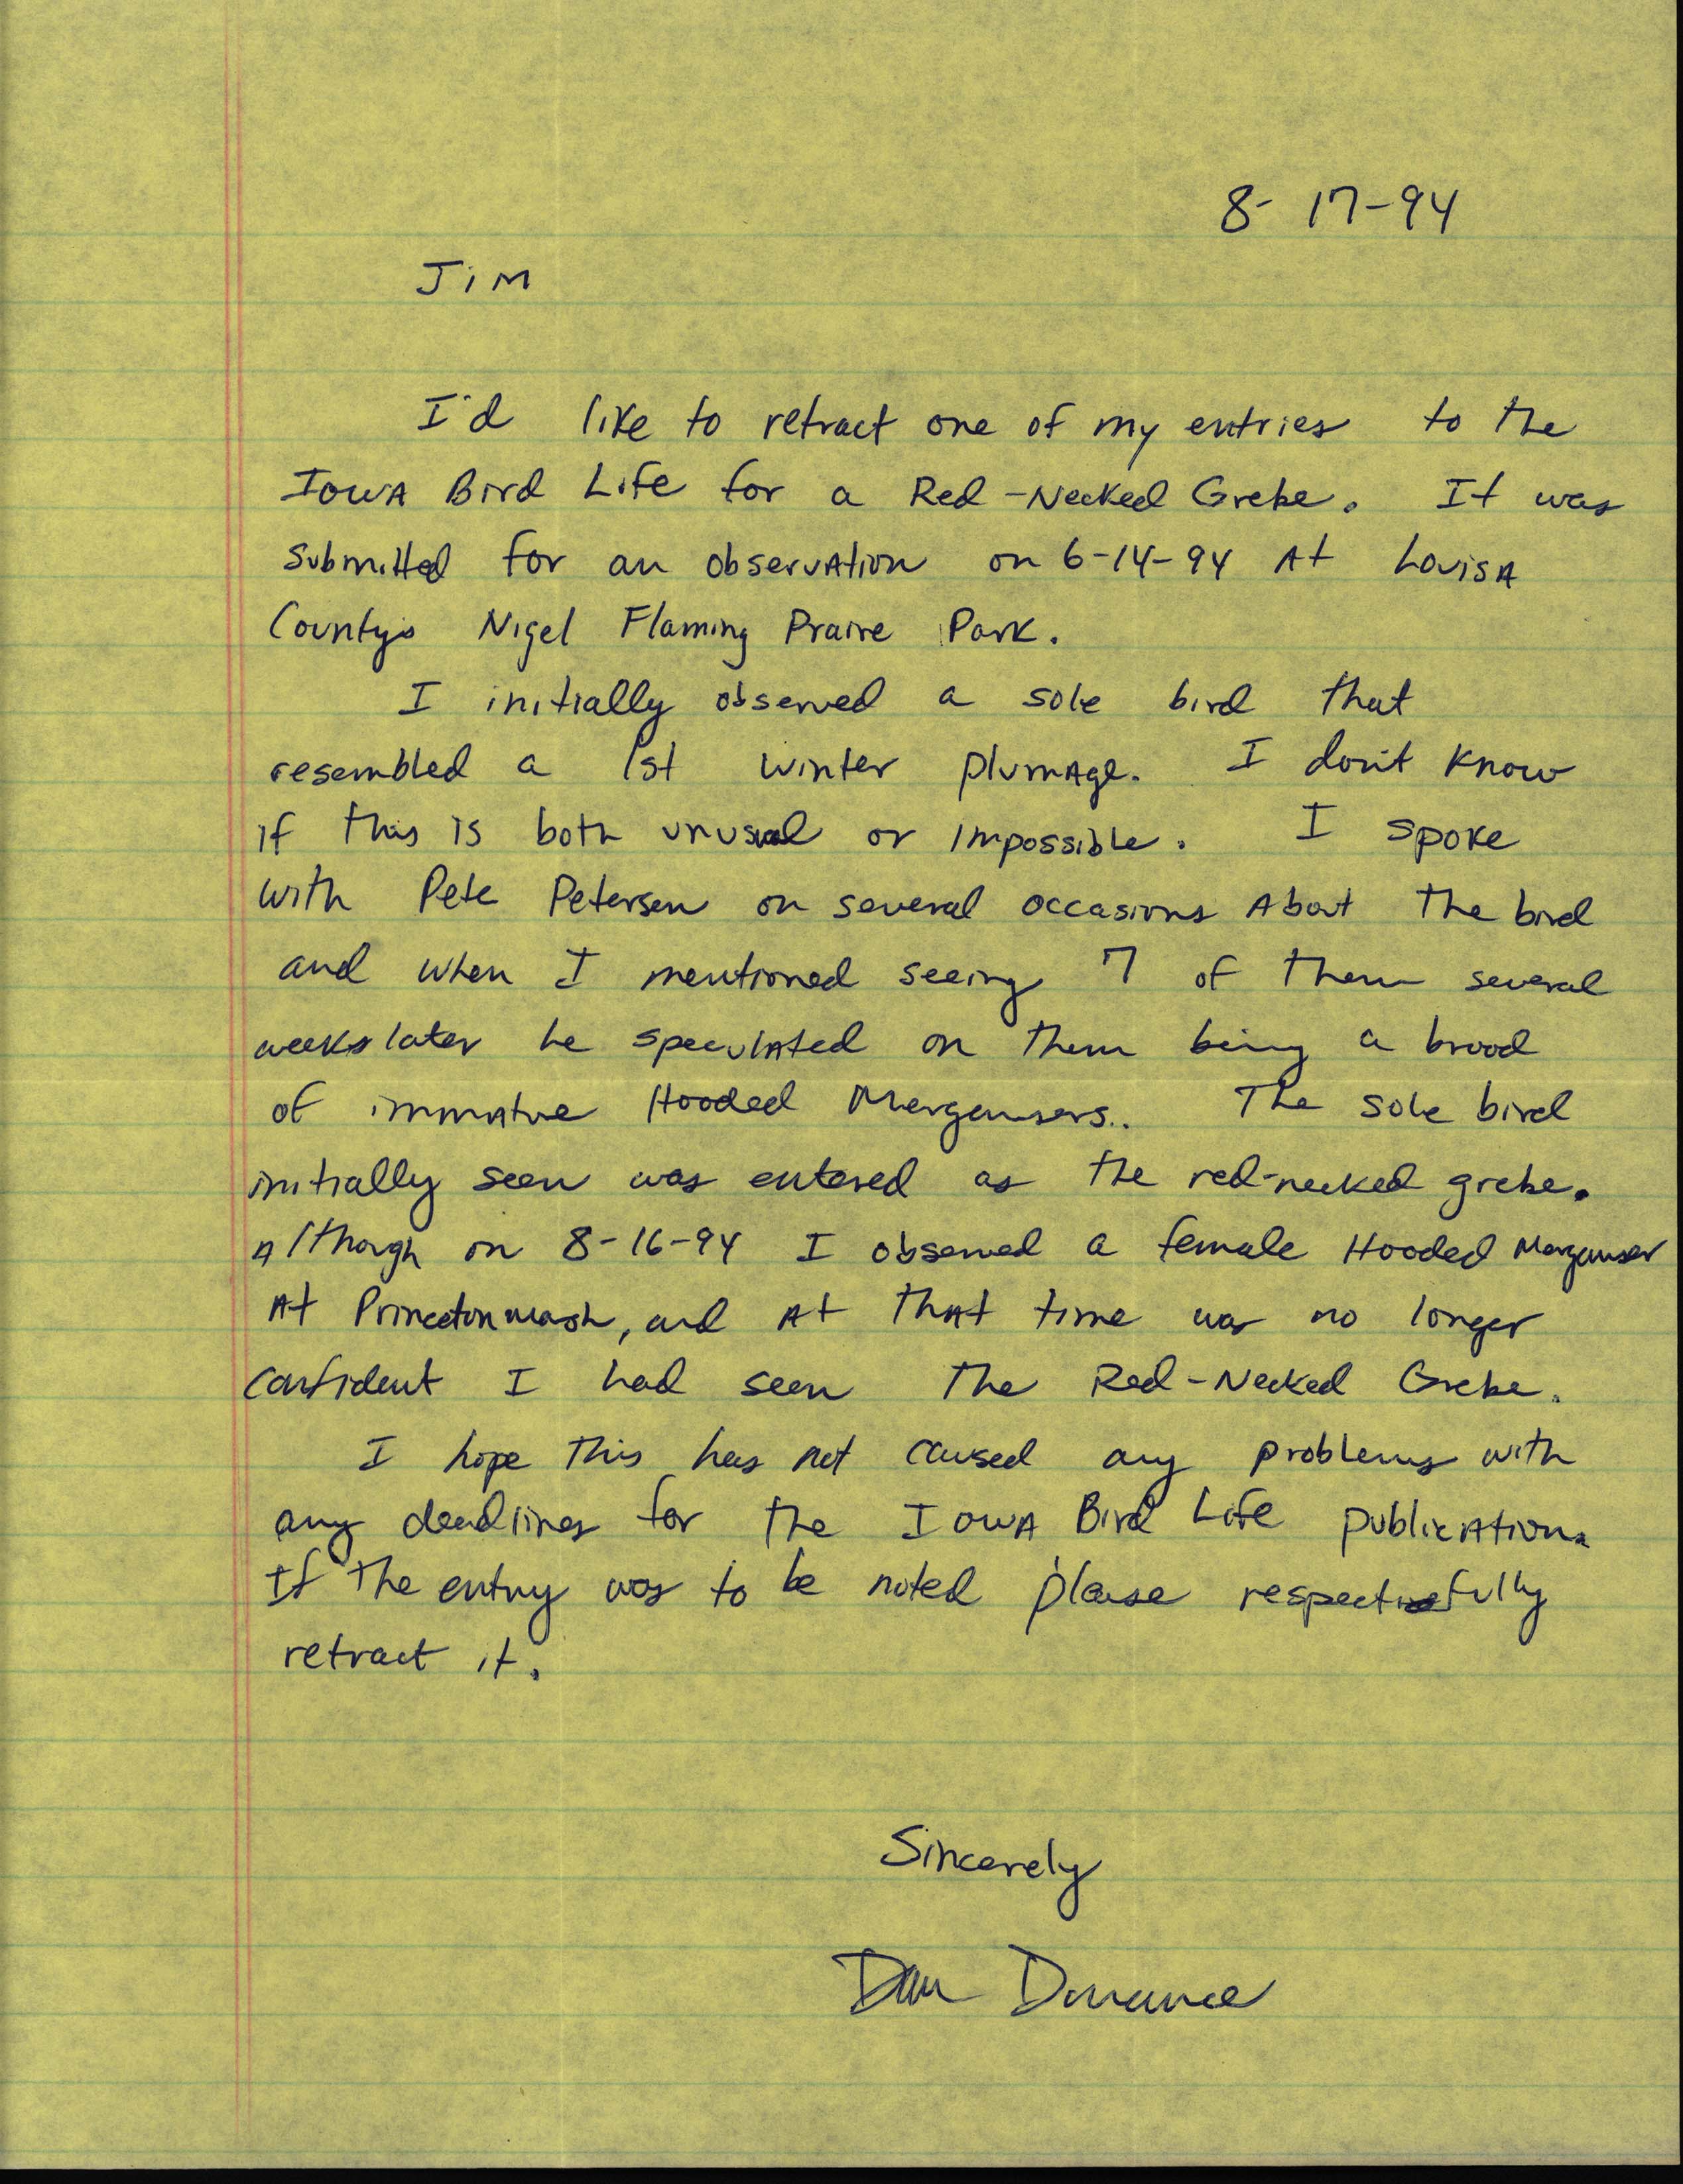 Dan Dorrance letter to Jim Dinsmore regarding Red-necked Grebe sighting, August 17, 1994